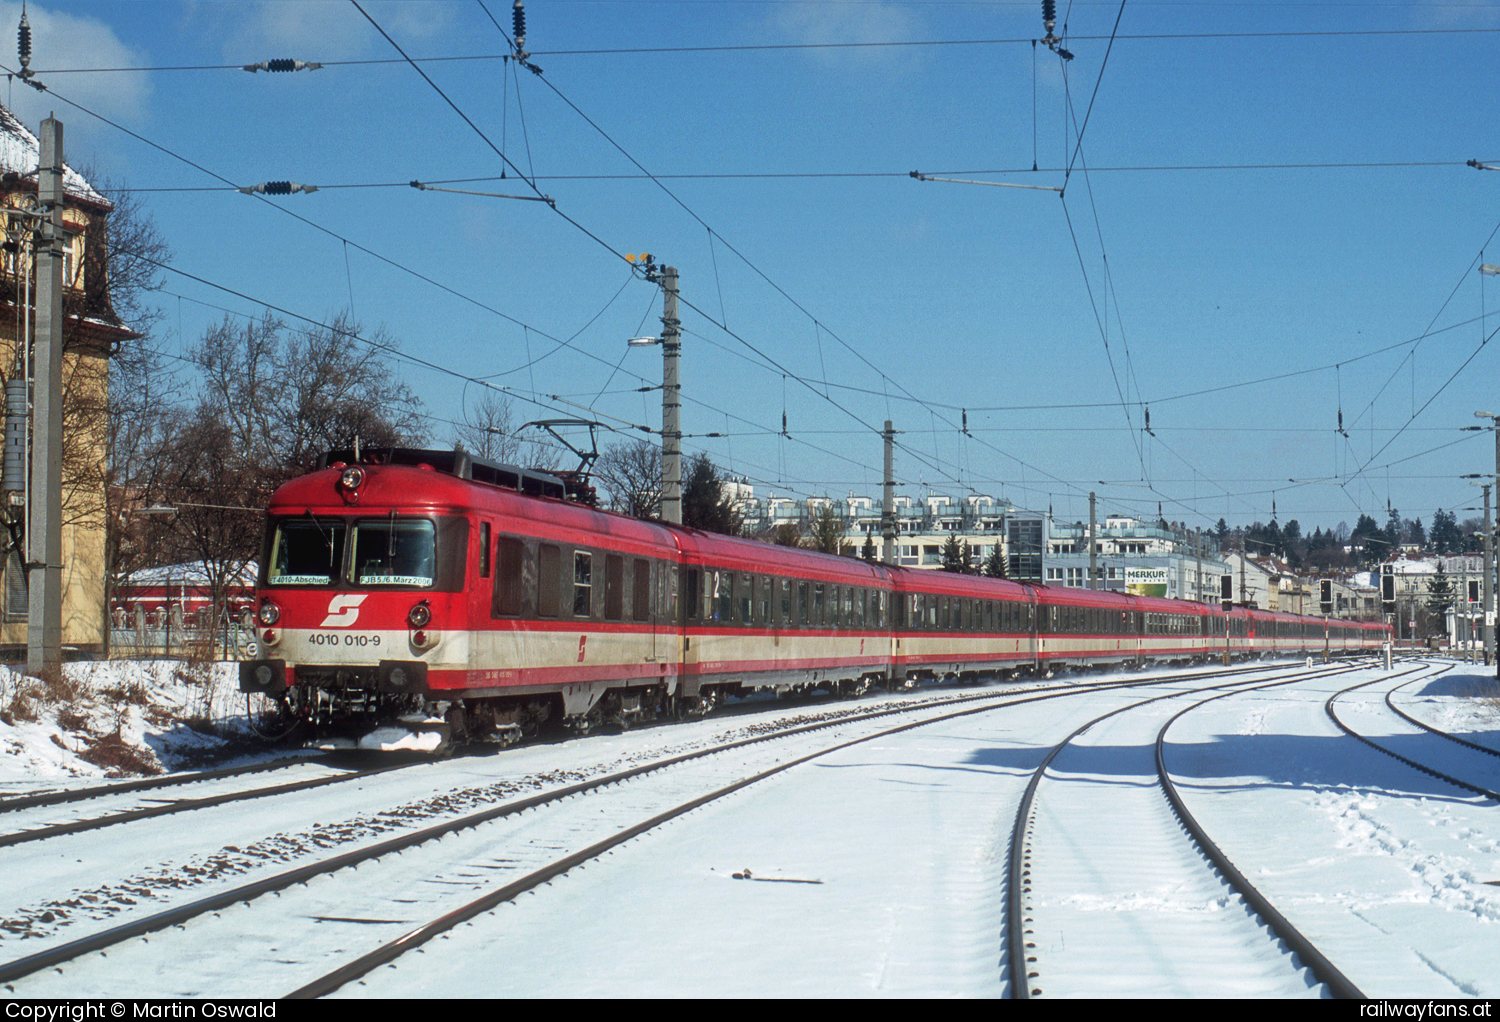 ÖBB 4010 010 in Wien Hernals mit dem 98923 Vorortelinie | Wien Hütteldorf - Wien Handelskai Railwayfans